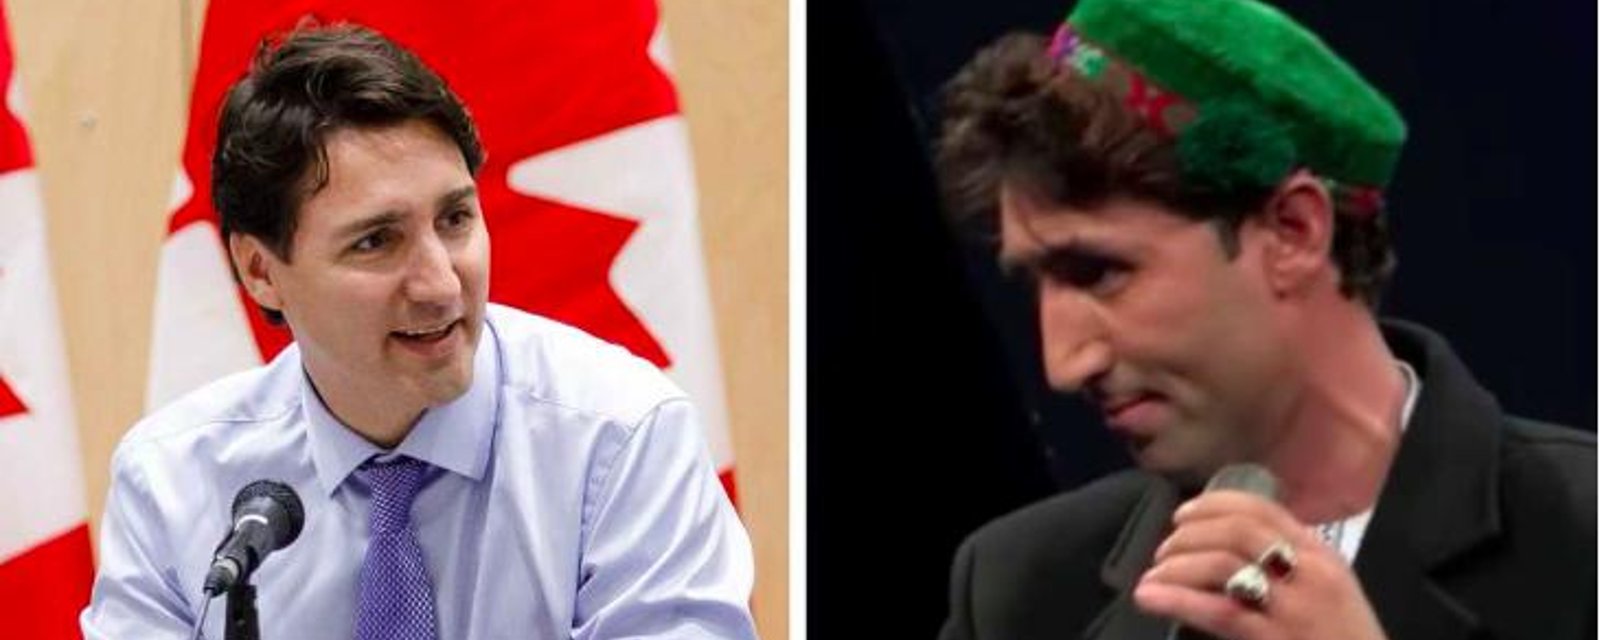 Afghanistan: Un sosie de Justin Trudeau fait fureur dans une populaire télé-réalité